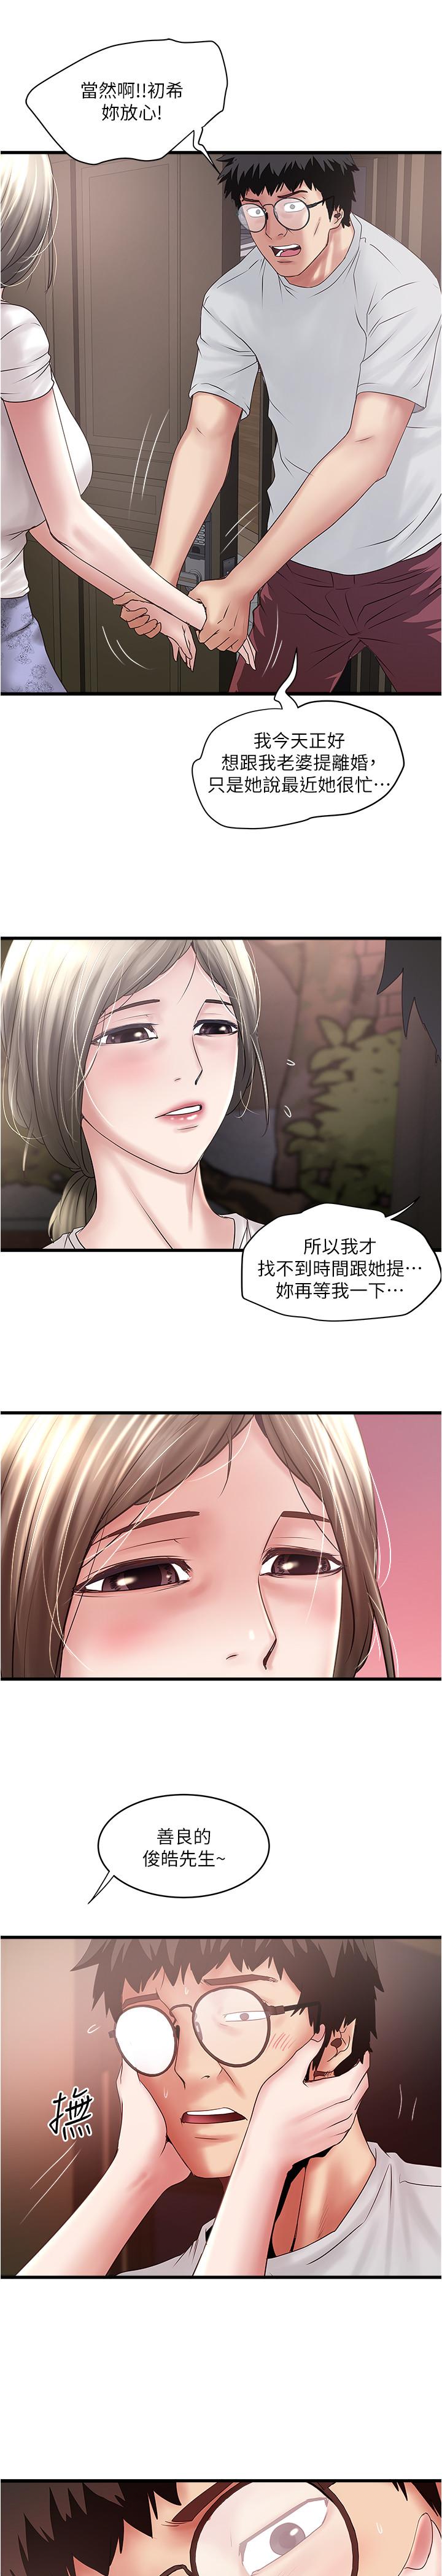 韩国污漫画 下女,初希 第90话-同时塞满花瑛的两个洞 19